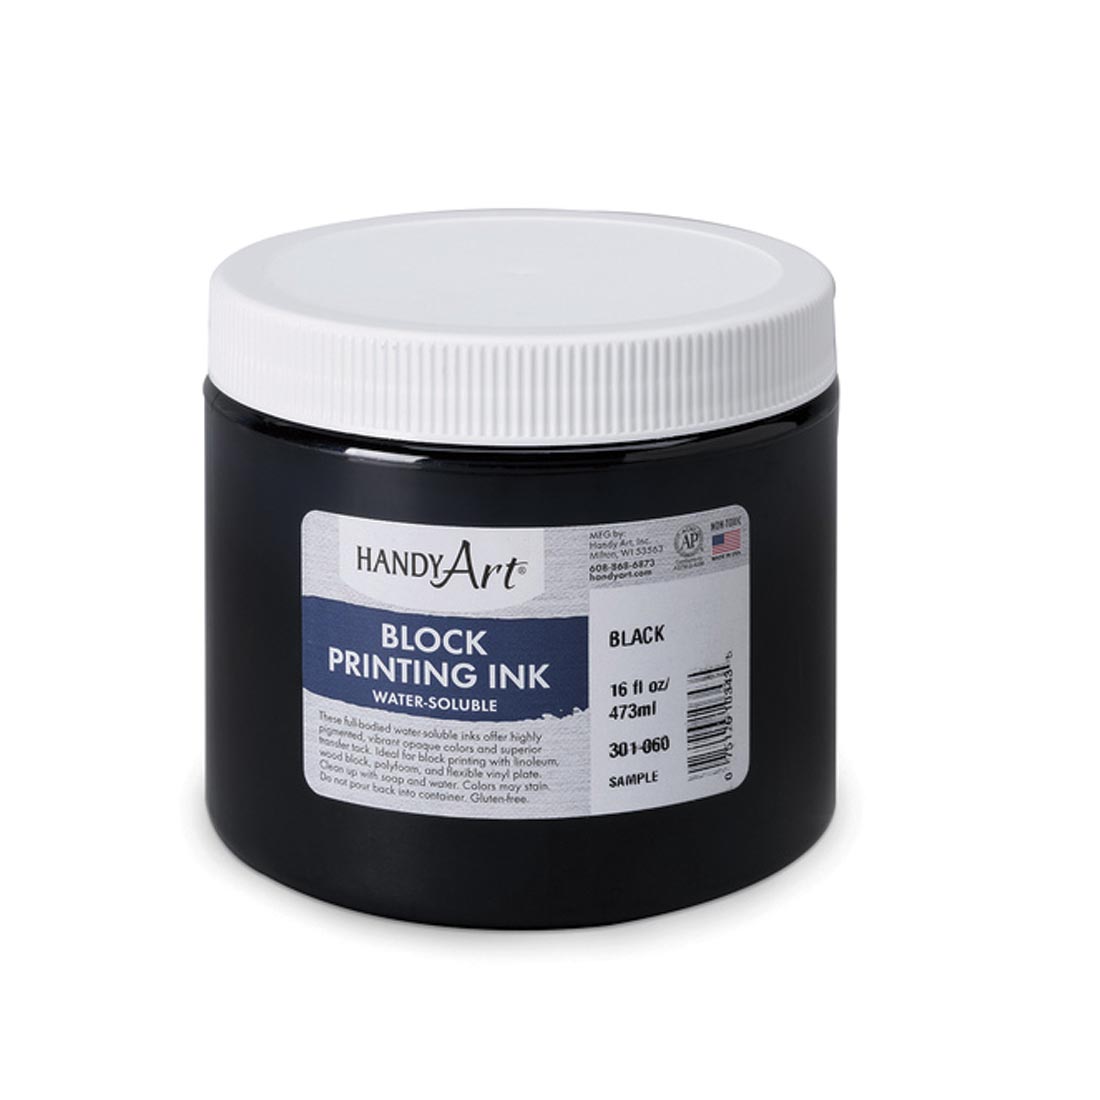 Jar of Black Handy Art Block Printing Ink